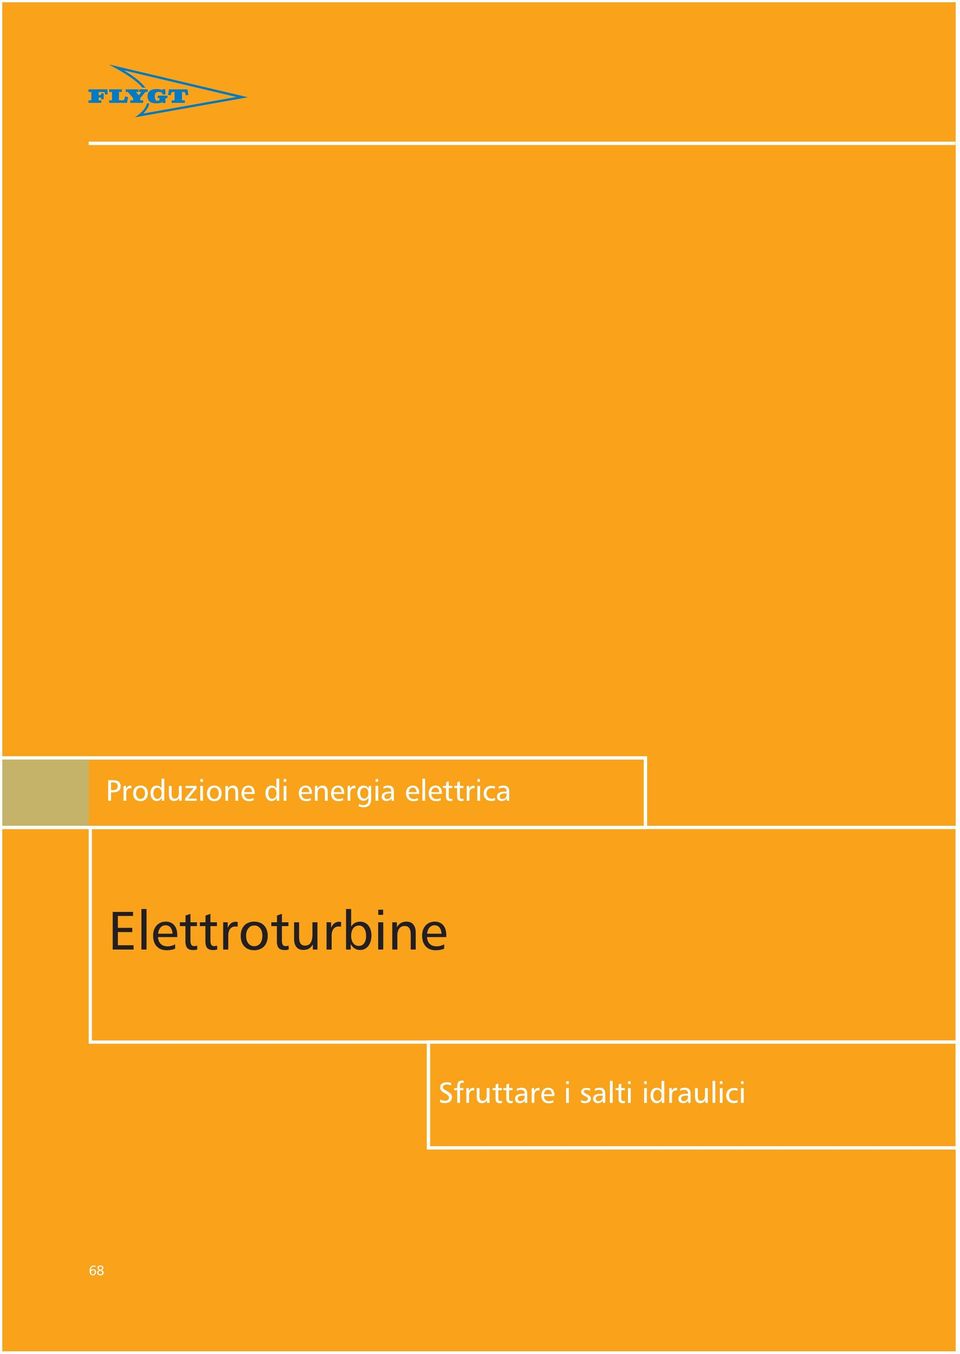 Elettroturbine